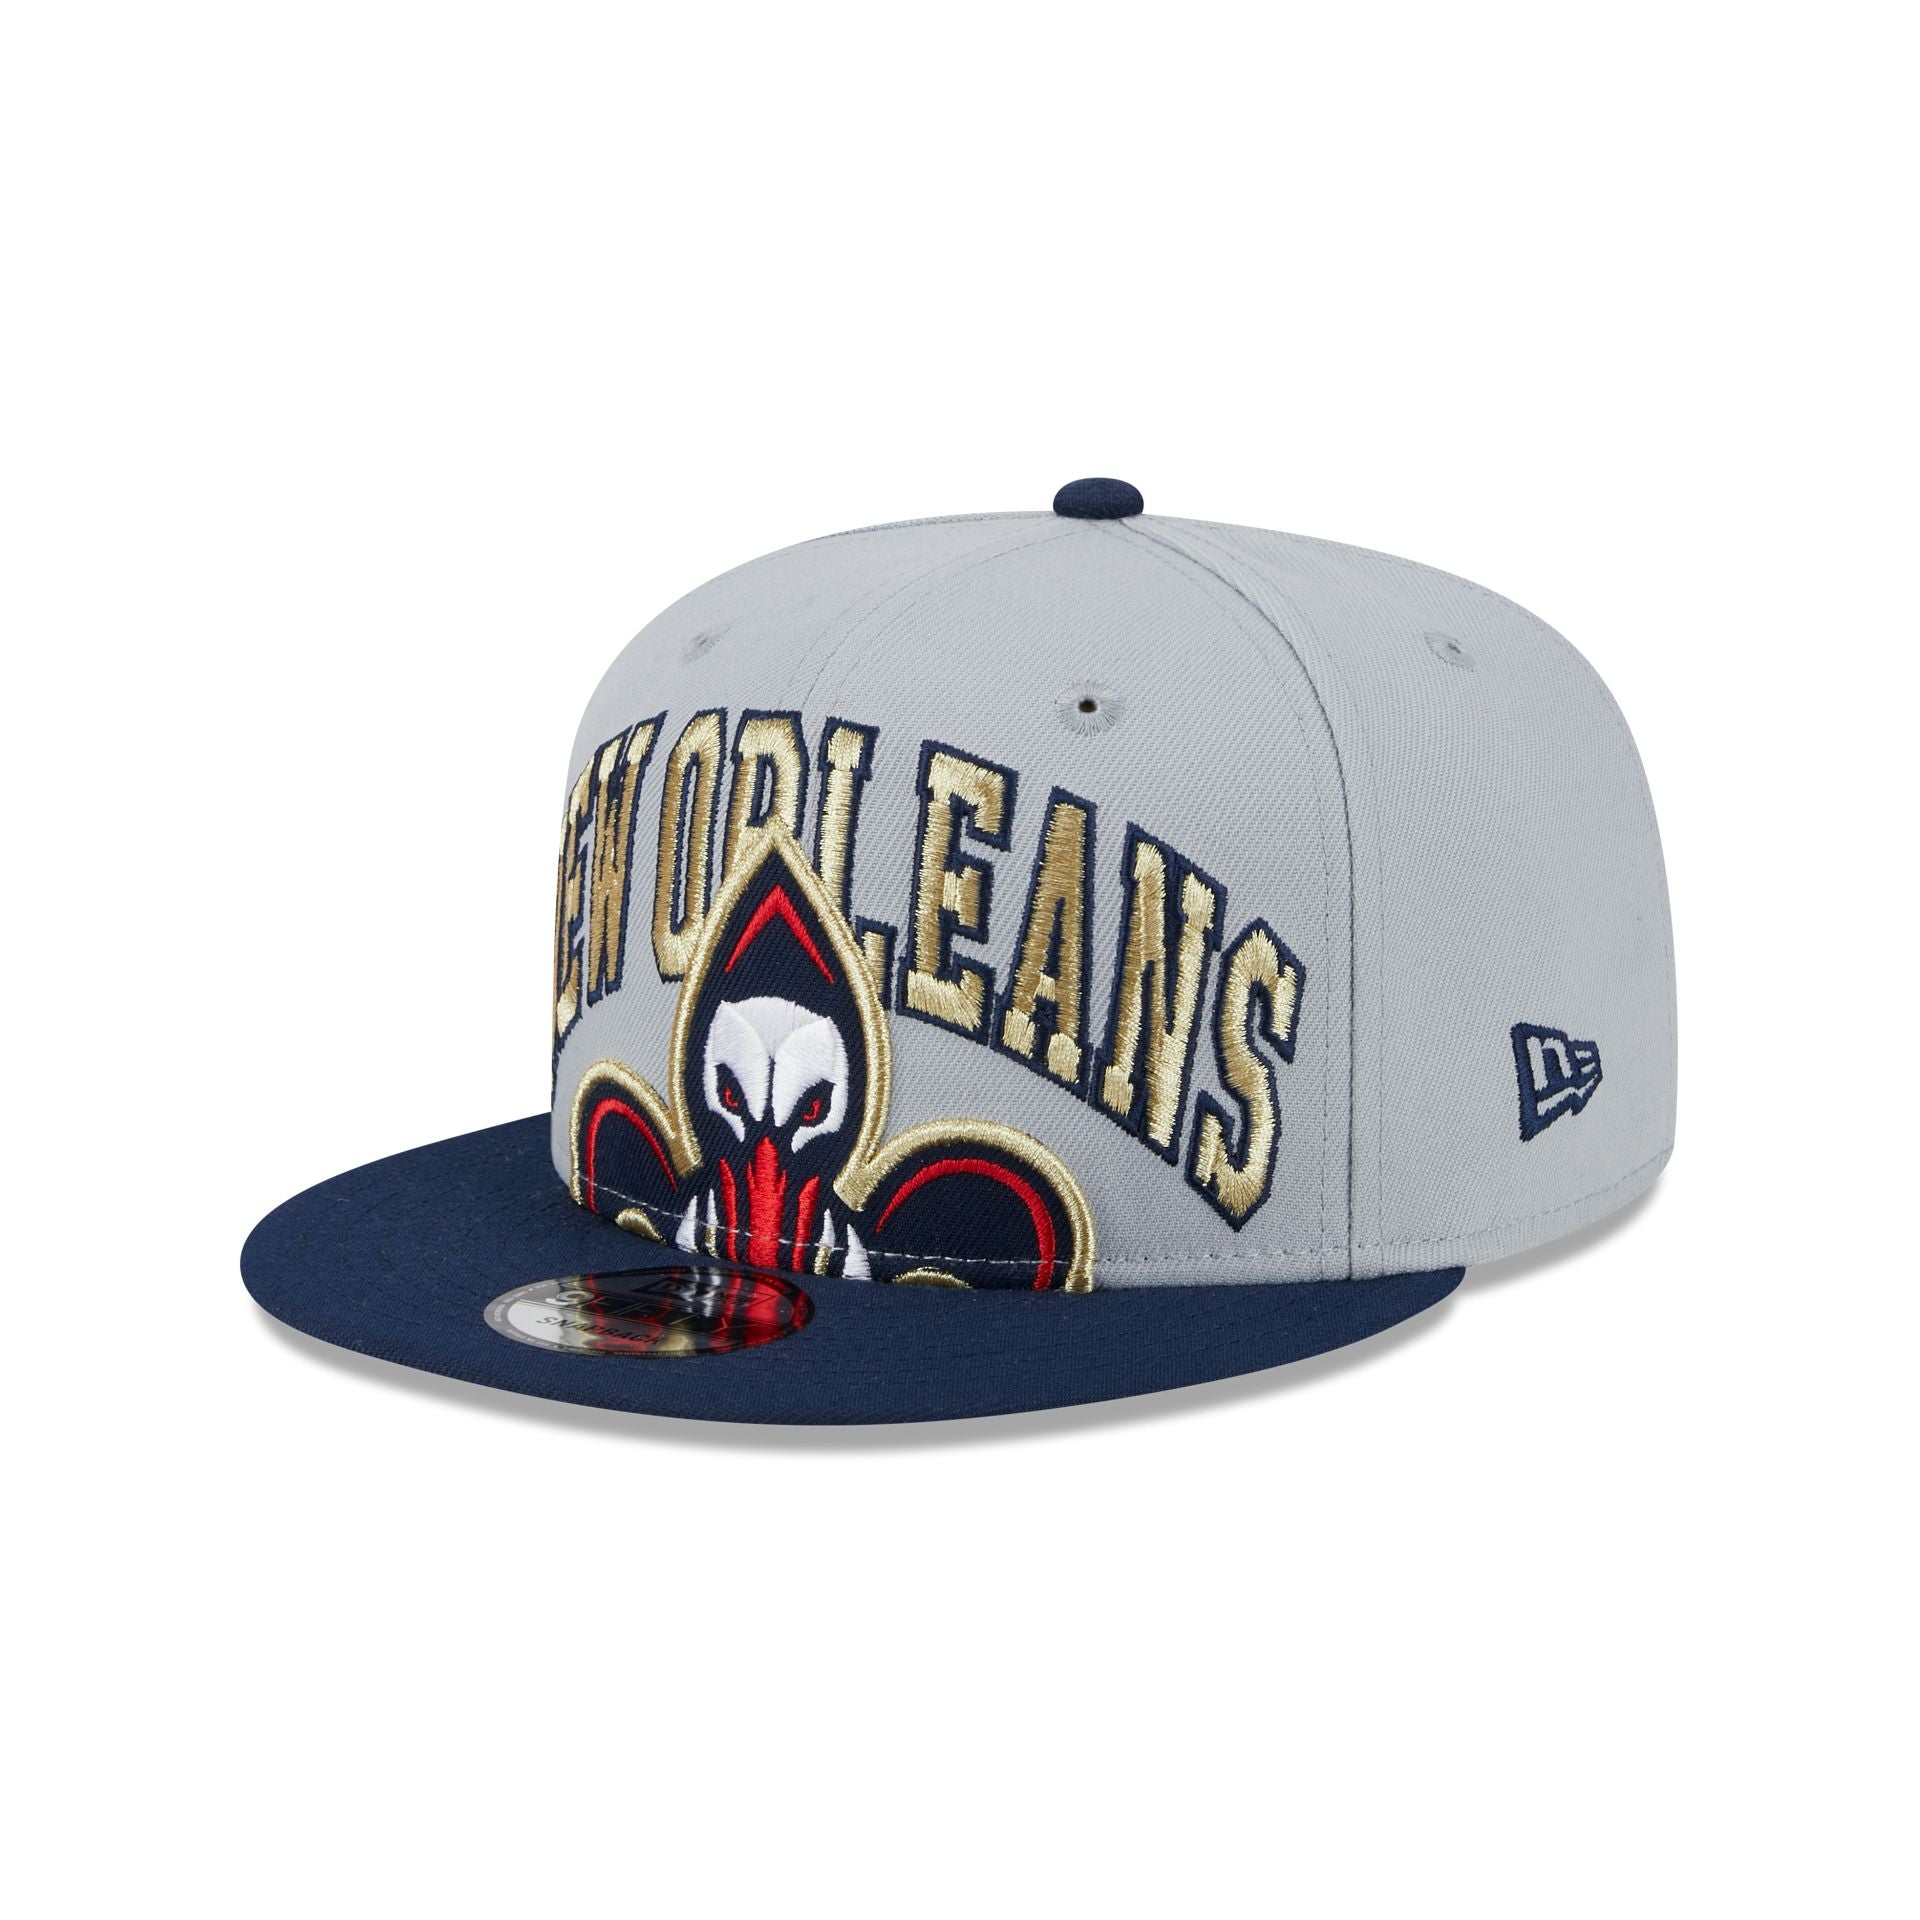 New Orleans Pelicans Team Shop in NBA Fan Shop 